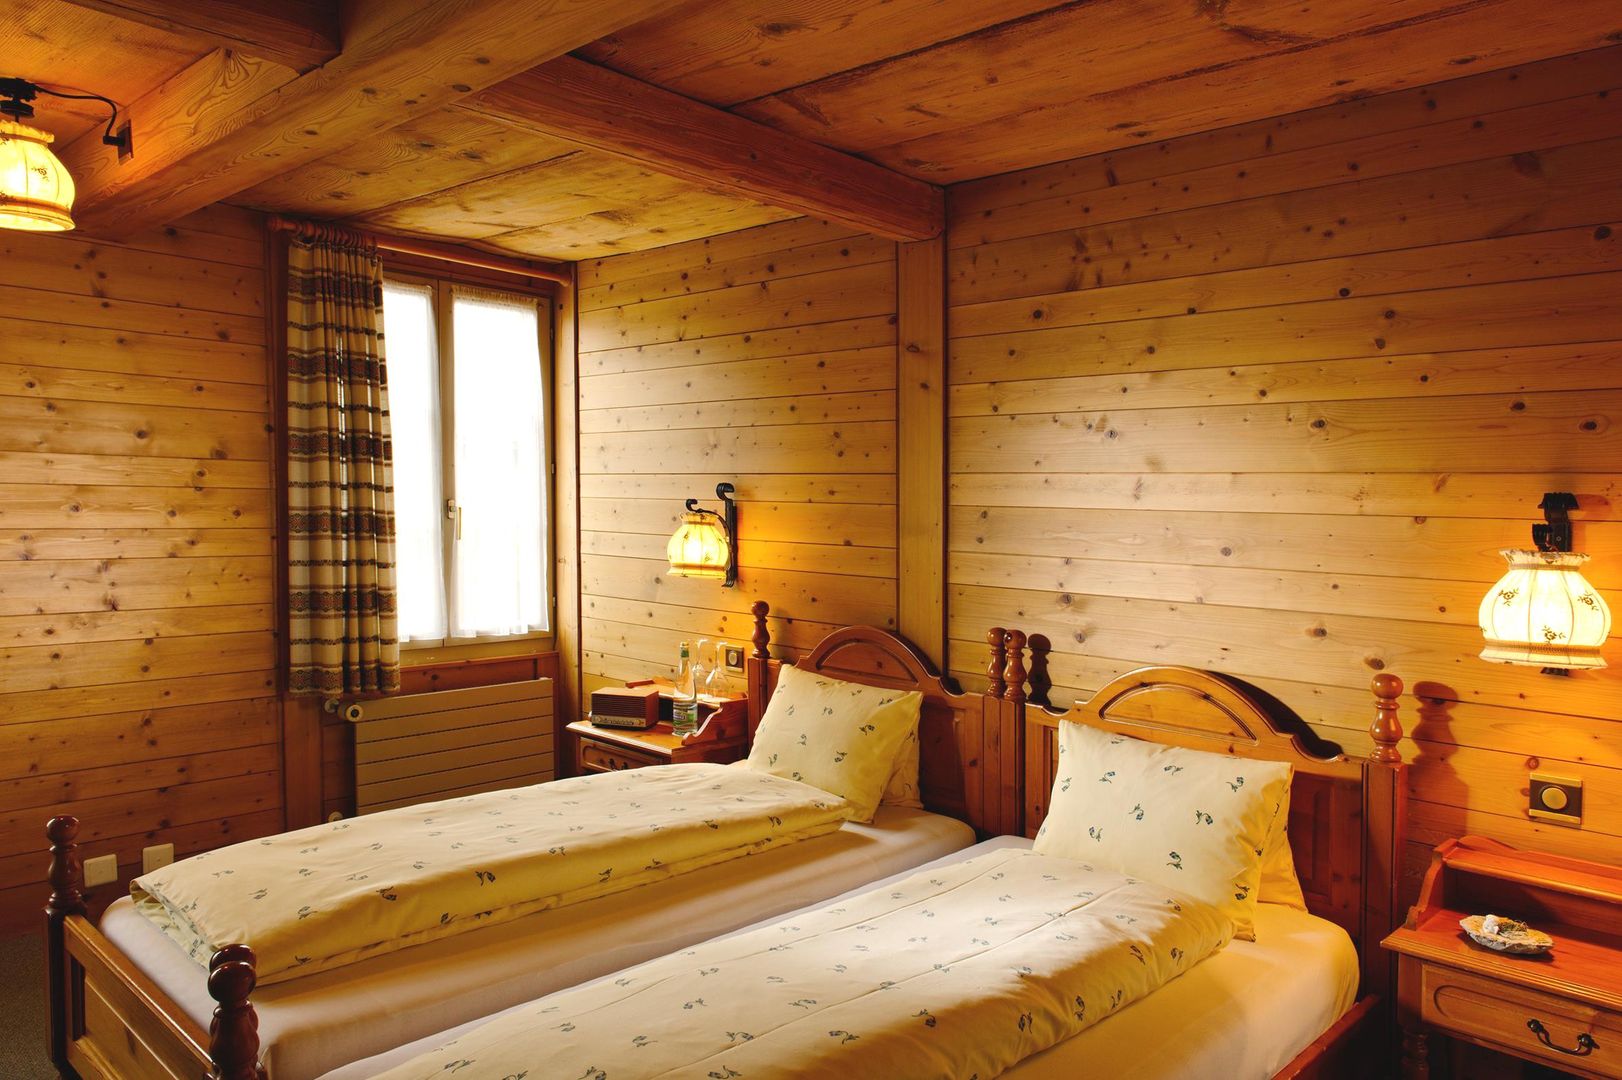 Fantastische skivakantie Jungfrau Regio ❄ Hotel Bären